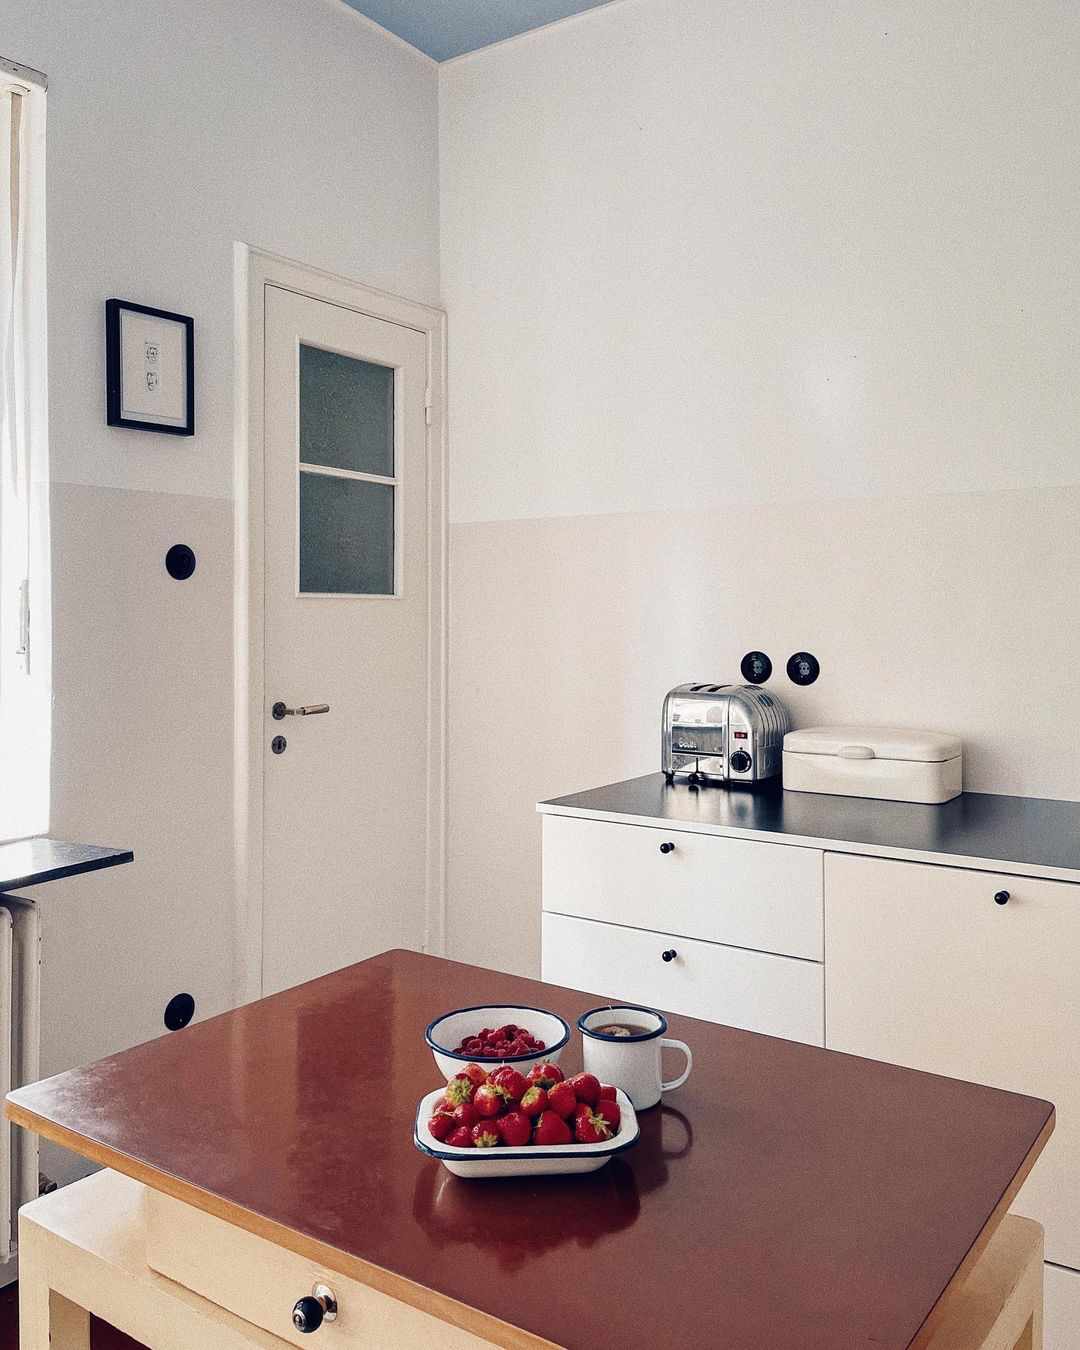 Cocina blanca minimalista Art Decó años 20